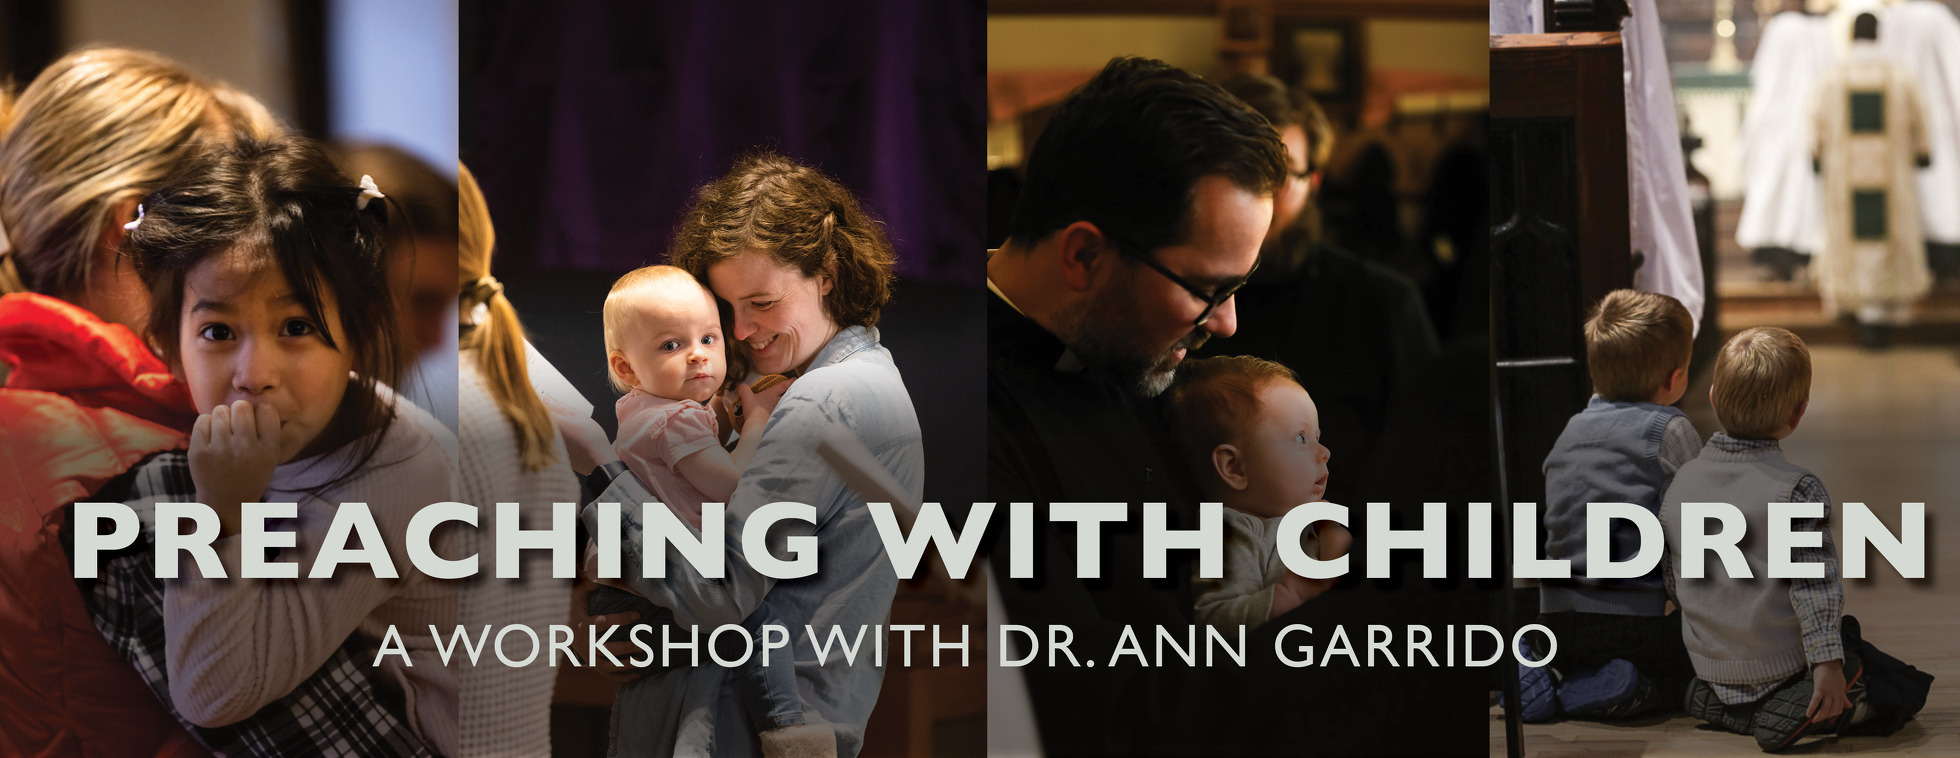 Preaching with Children Workshop